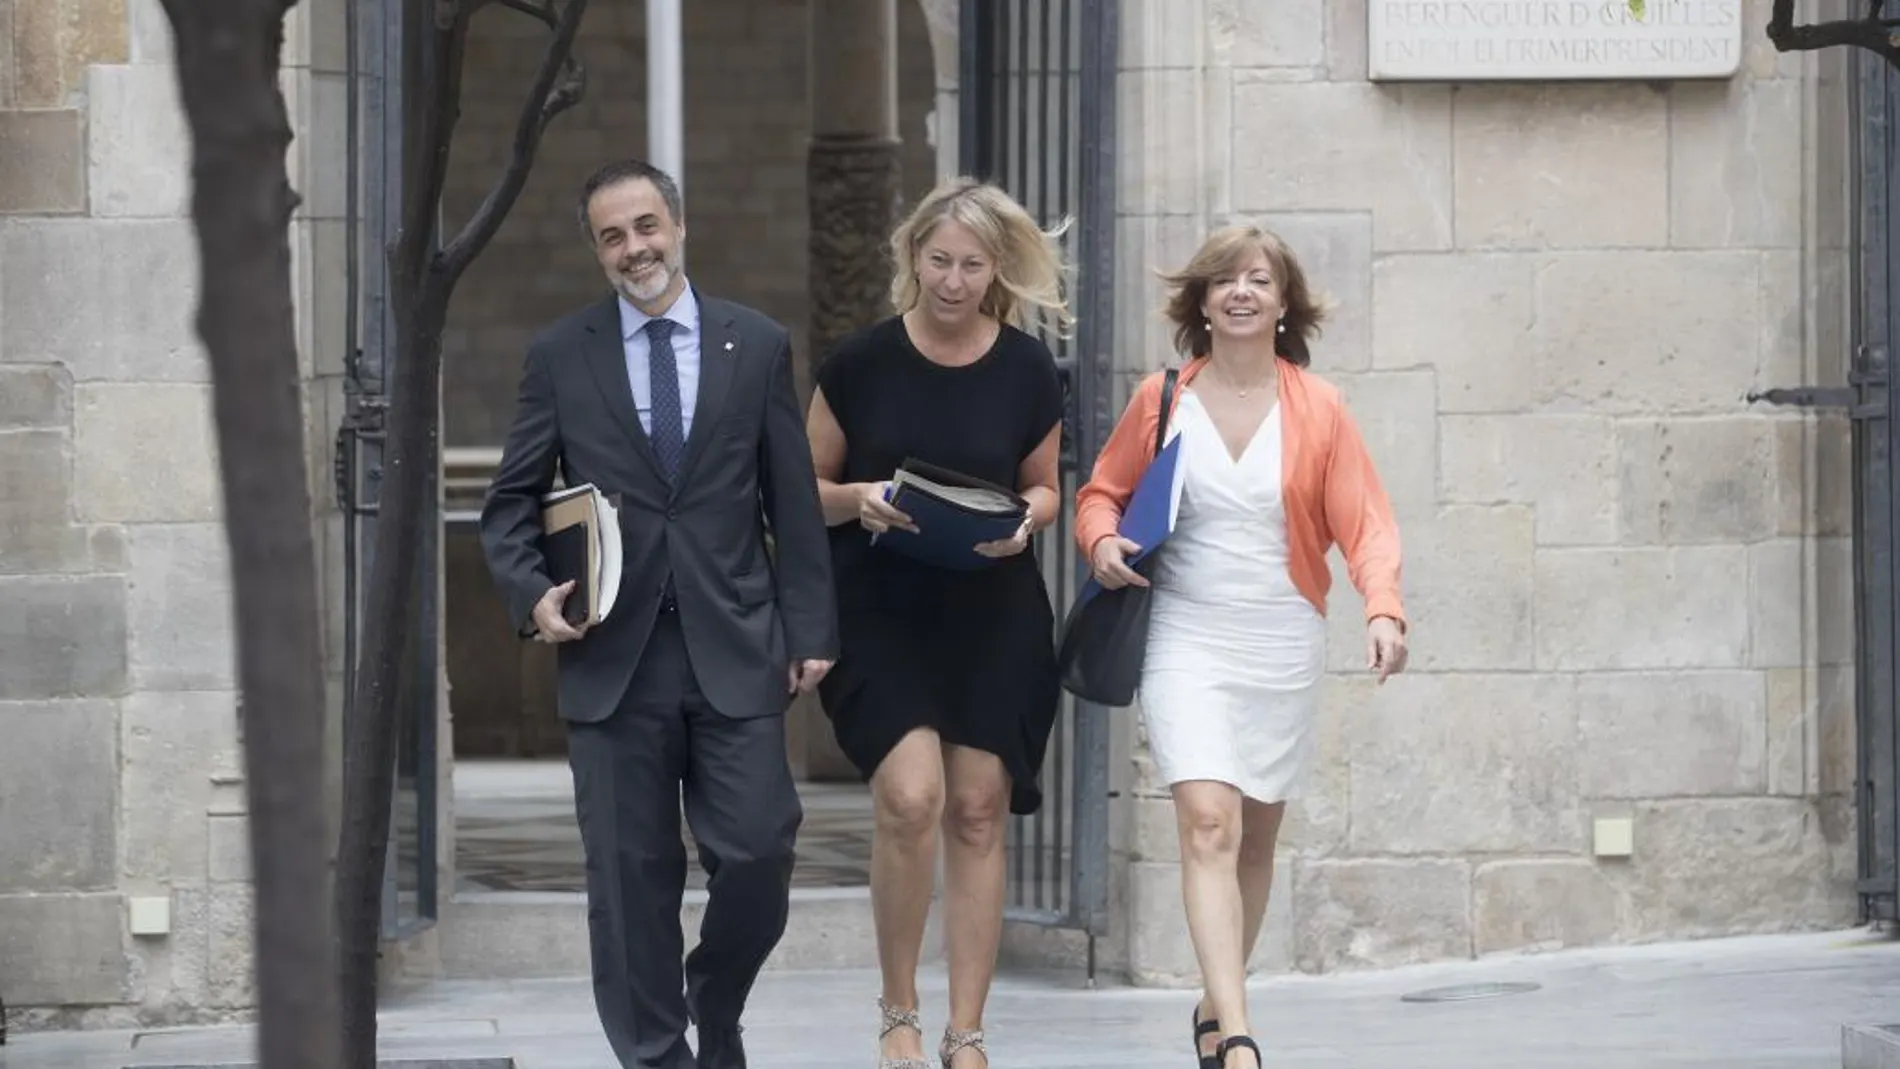 La consellera portavoz, Neus Munté (c), junto a la consellera de Governació, Meritxell Borrás (d), y el secretario del Govern, Joan Vidal (i)